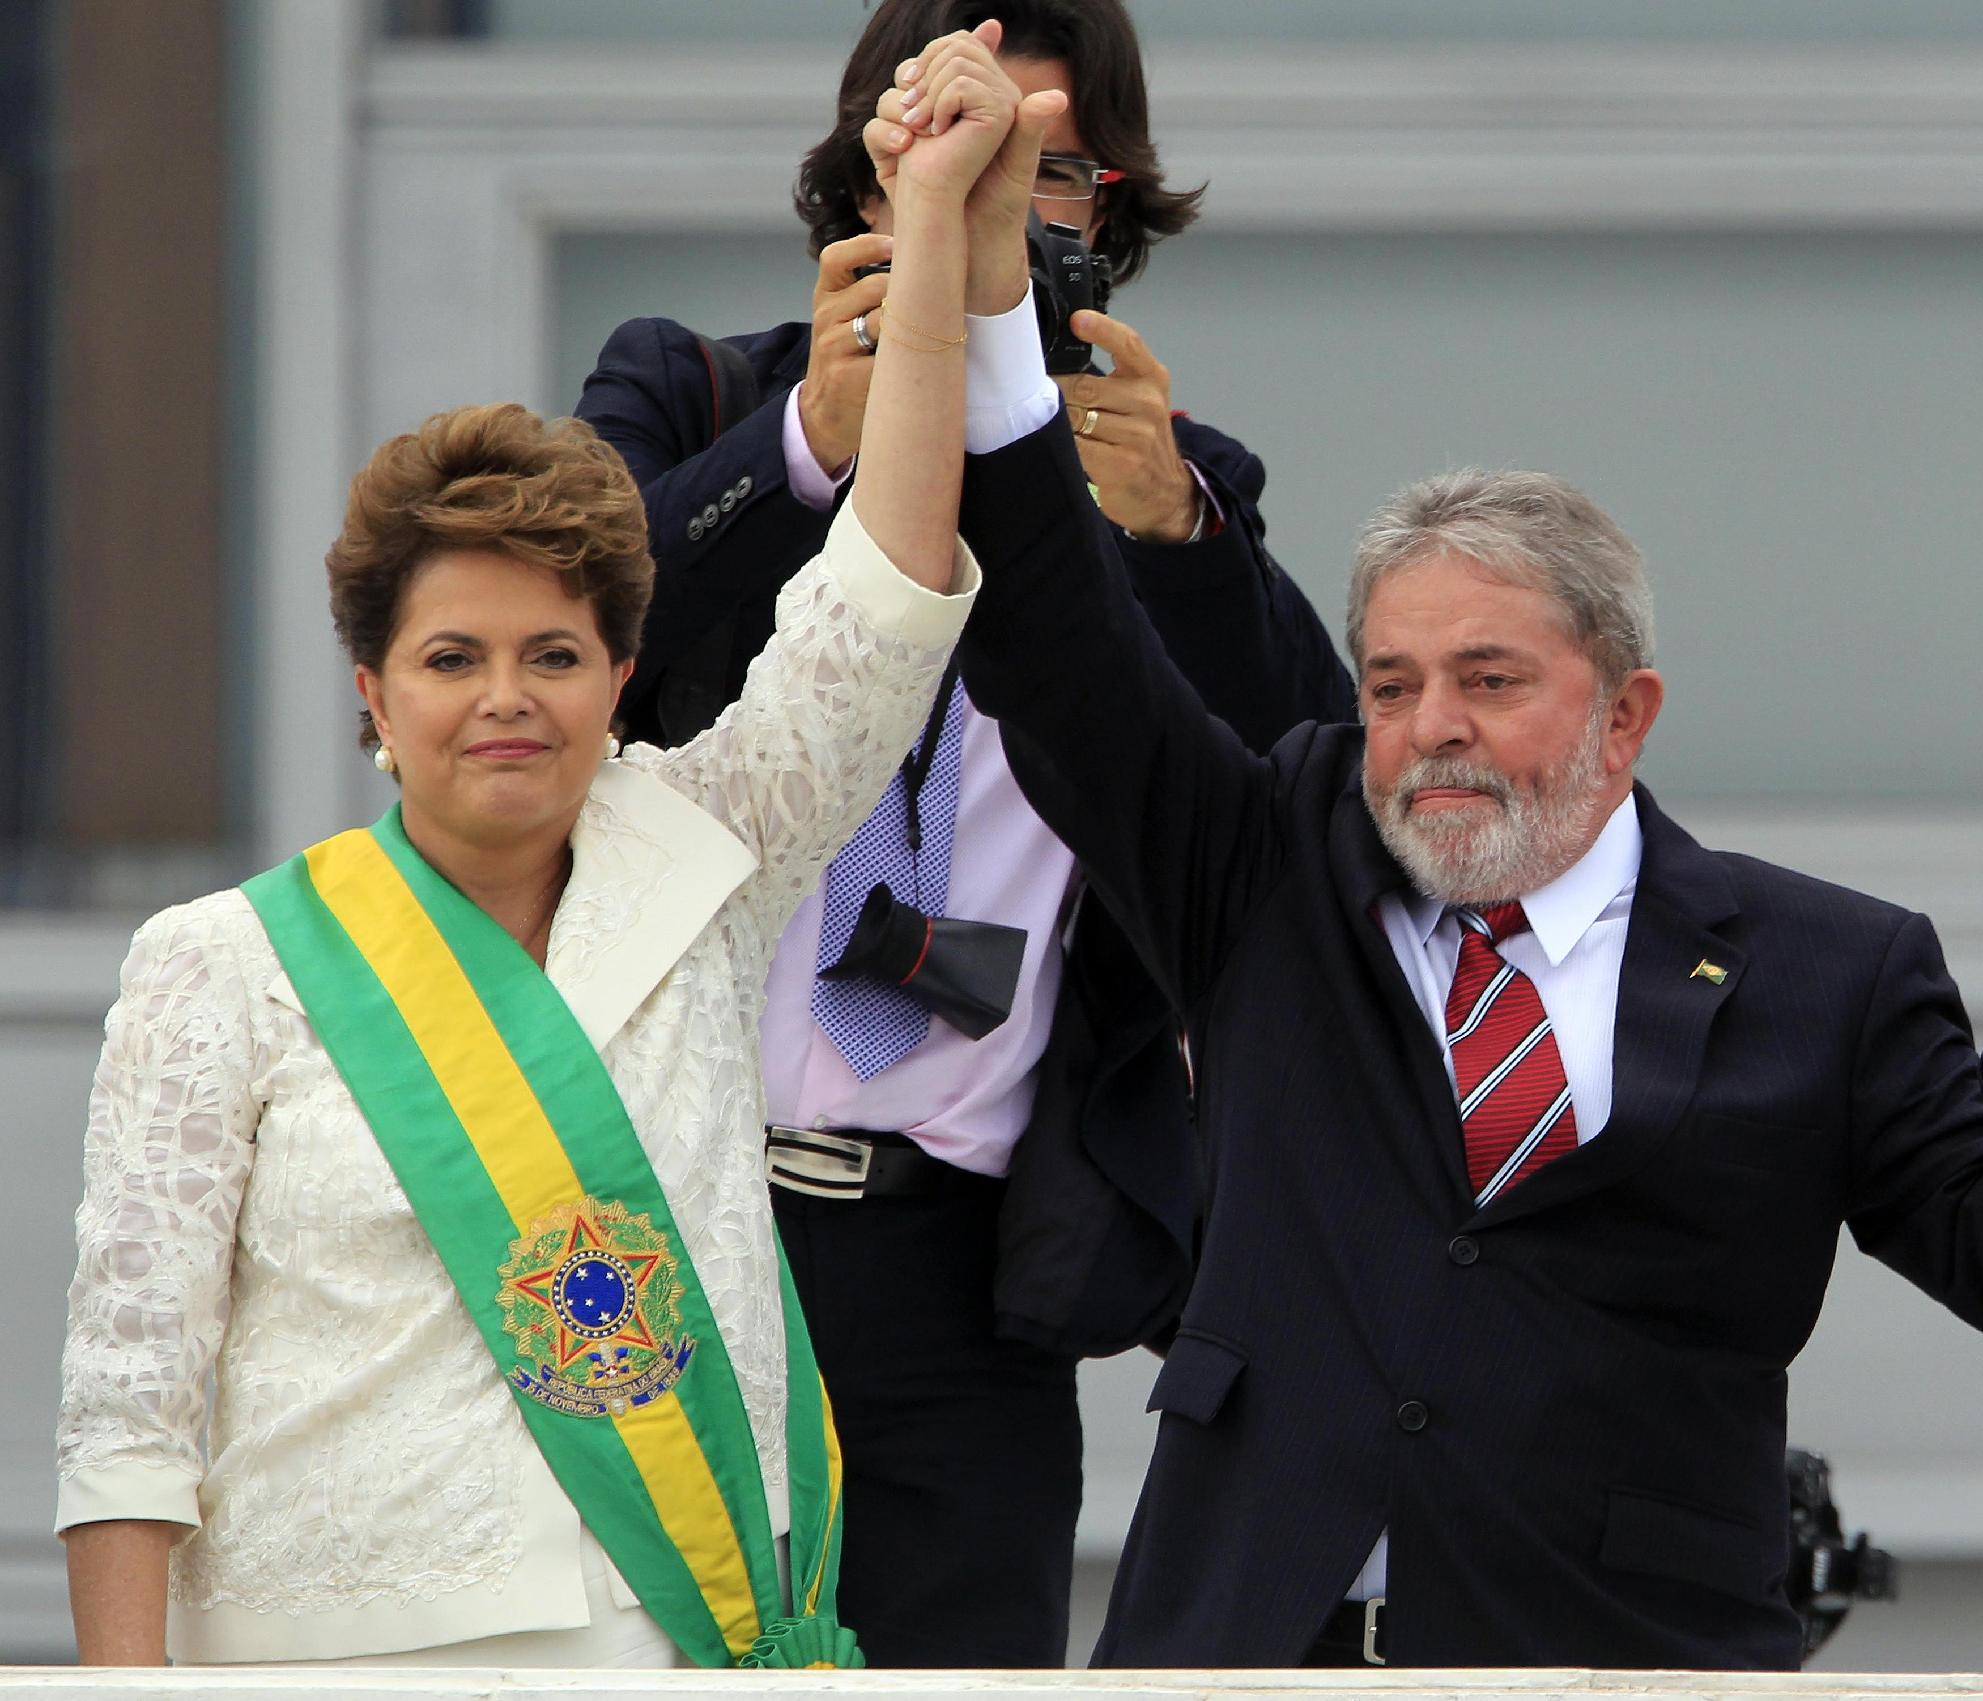 Στέλνουν τον Λούλα στο δικαστήριο για οικονομικά εγκλήματα